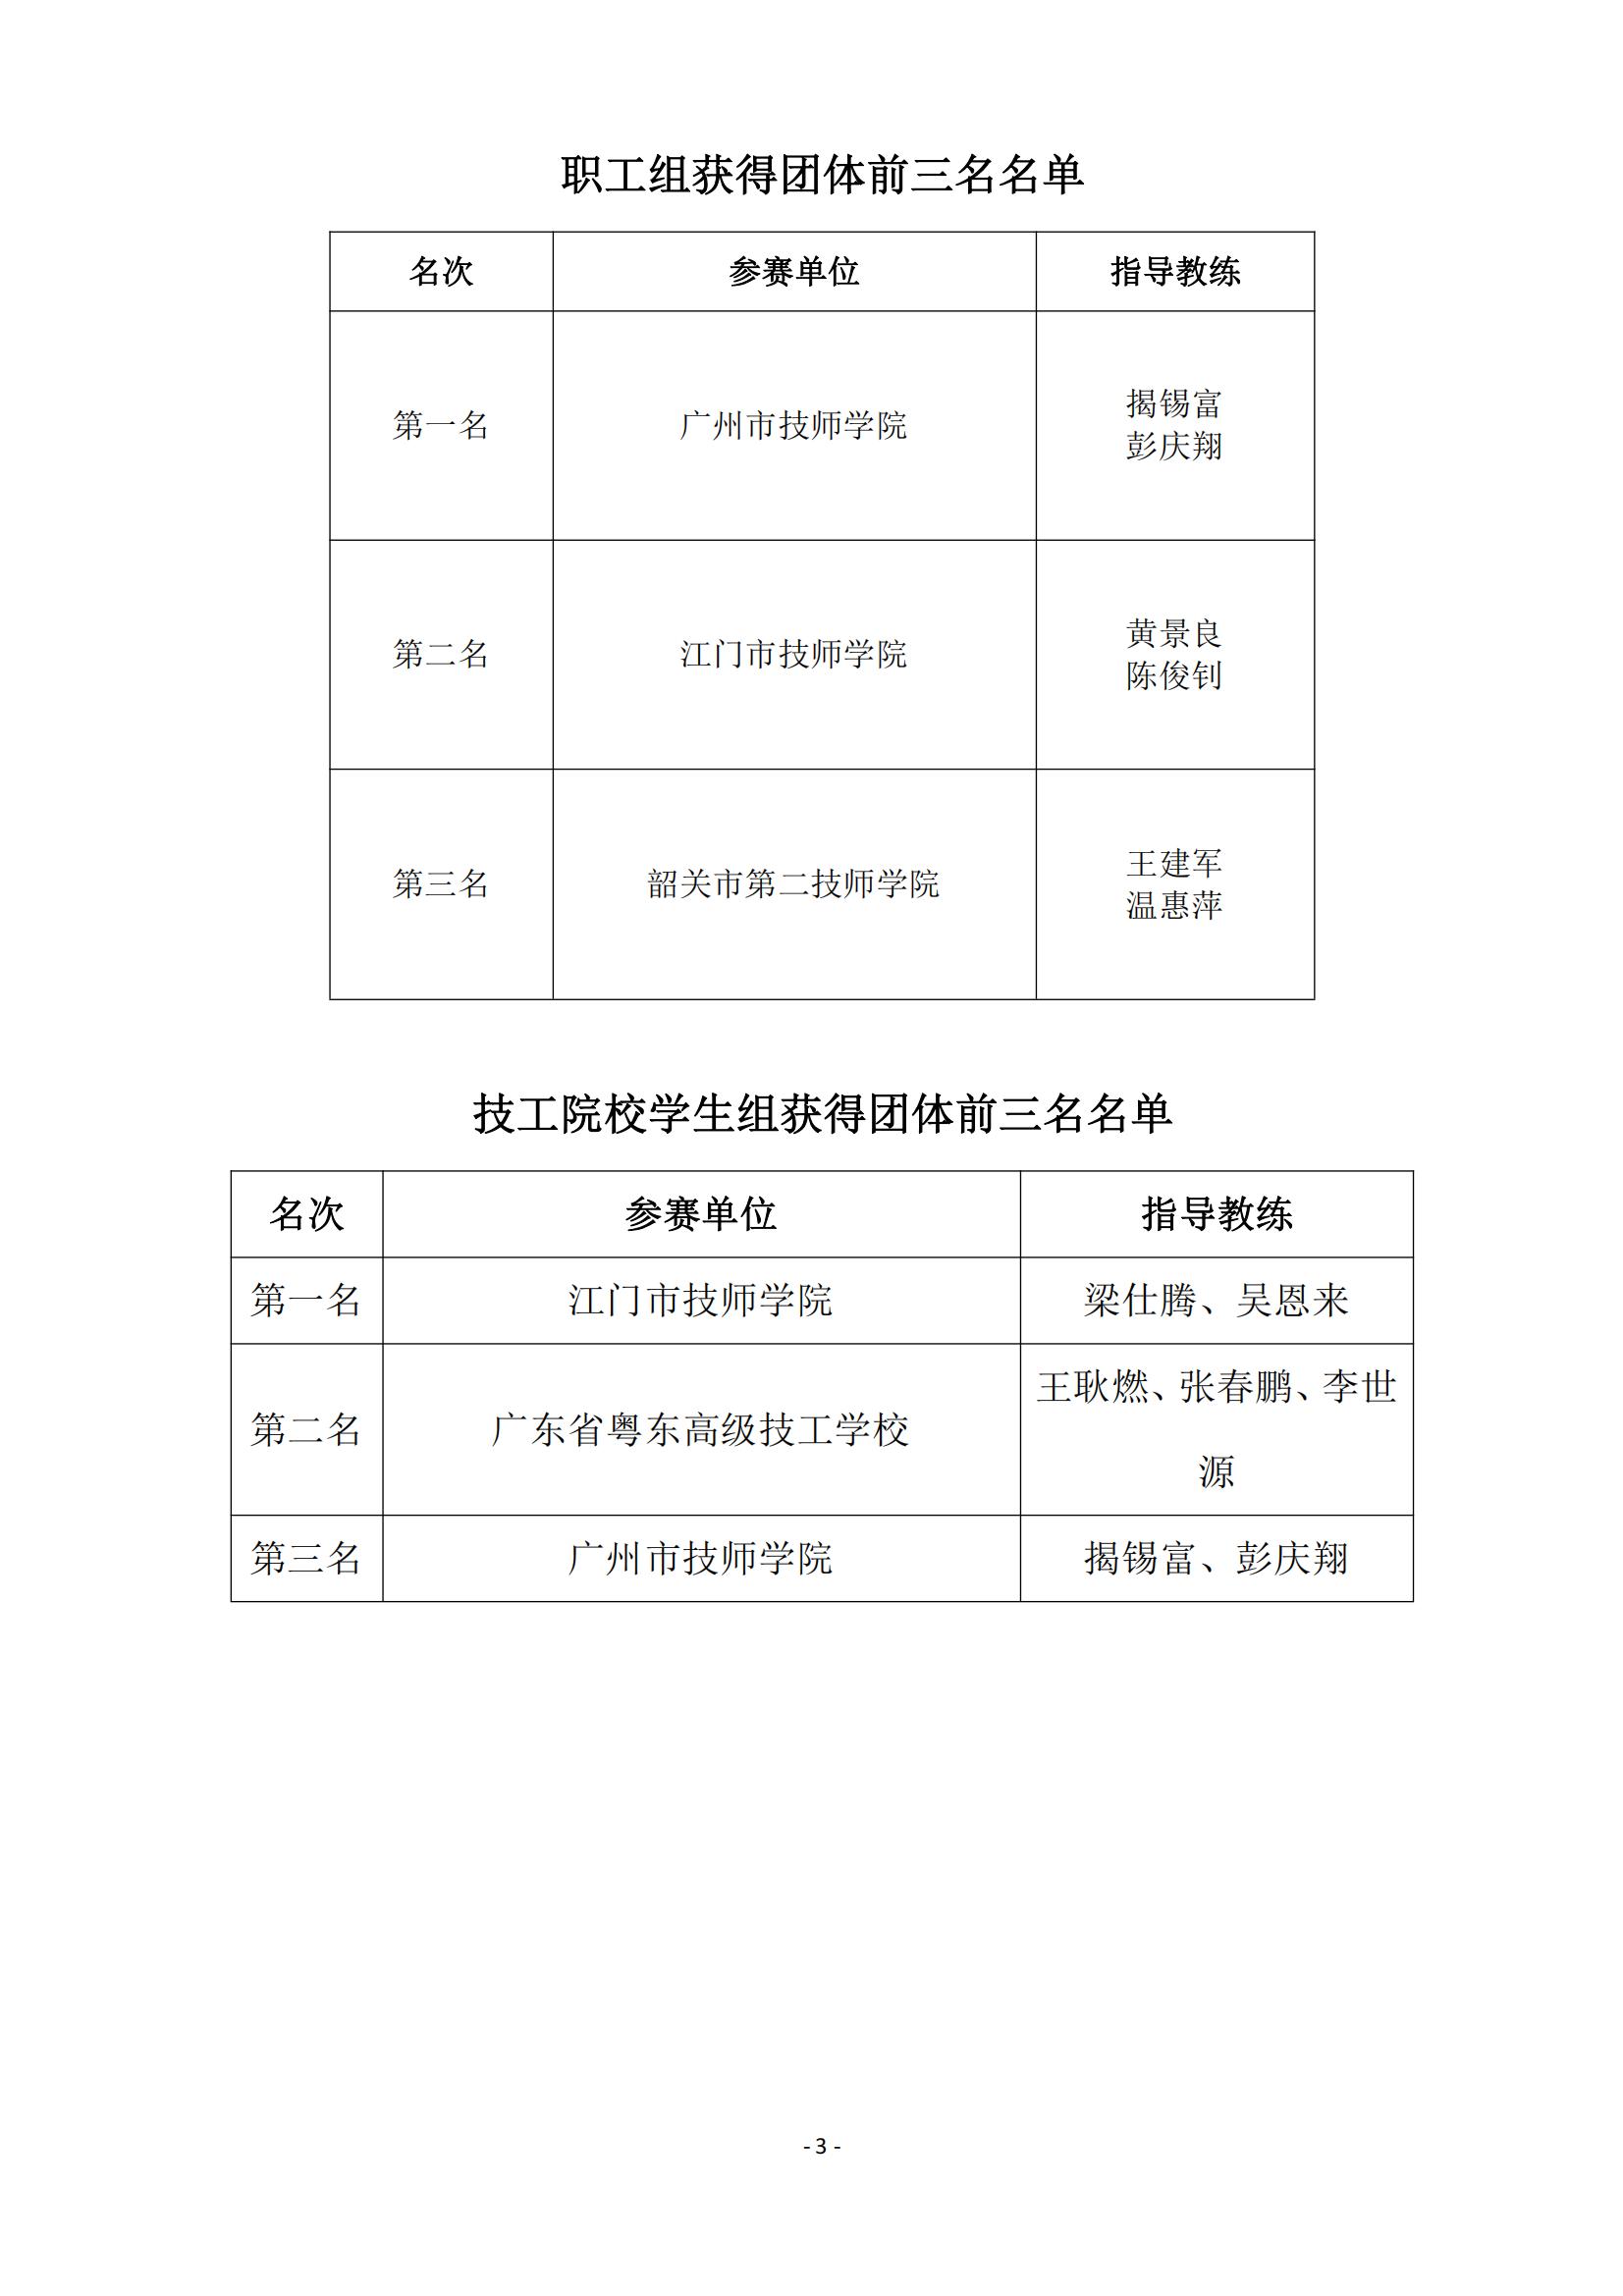 2015 年中国技能大赛--广东省机电一体化职业技能竞赛_02.jpg